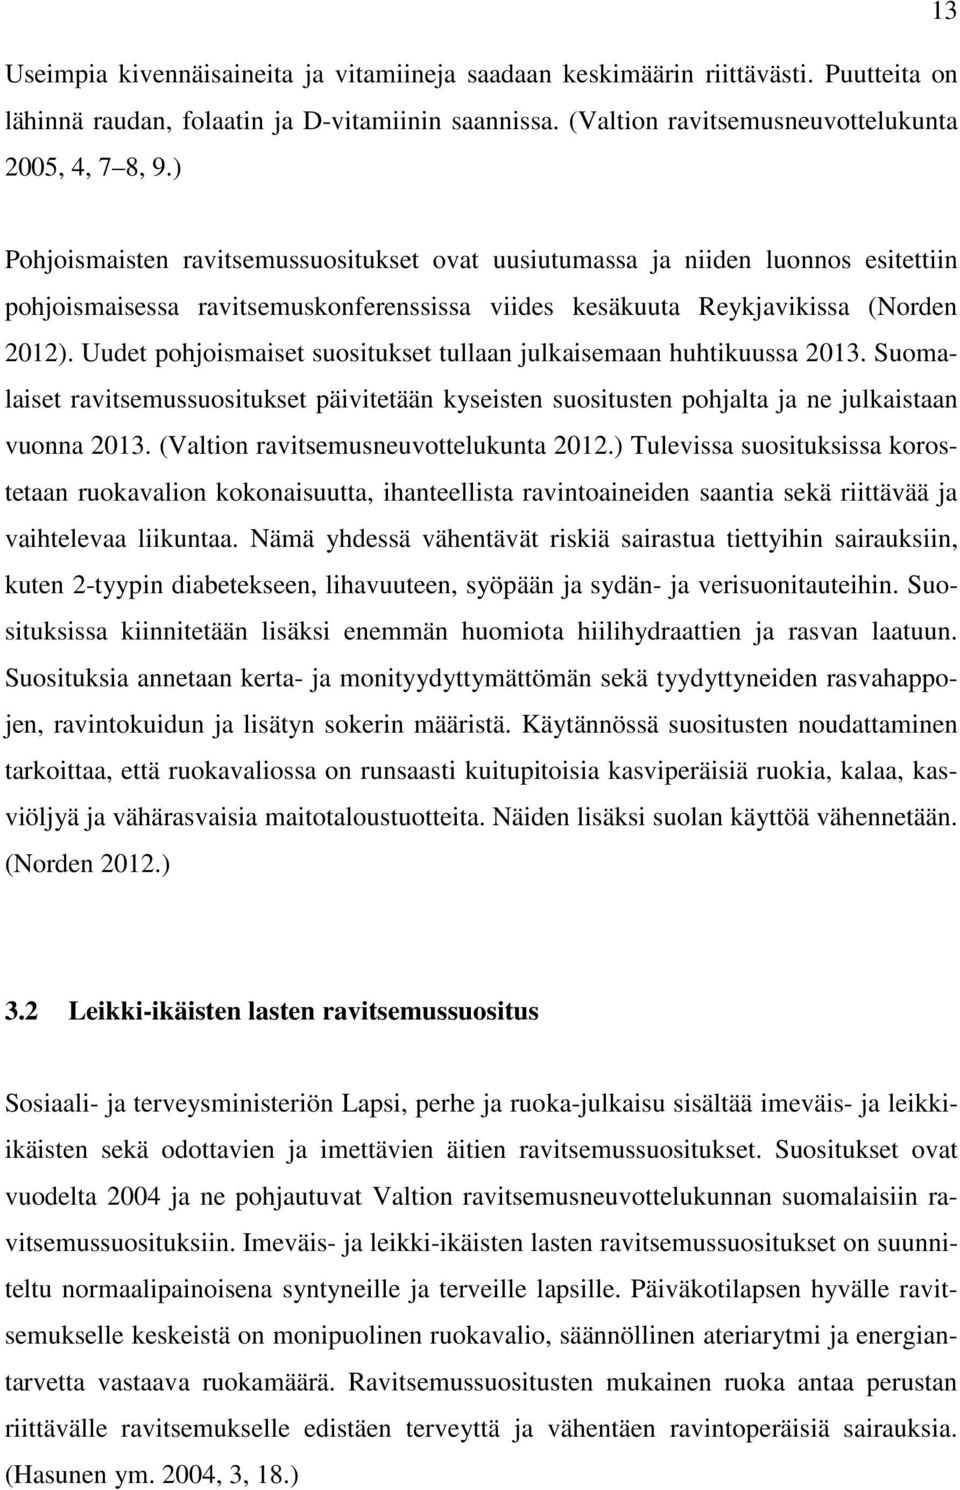 Uudet pohjoismaiset suositukset tullaan julkaisemaan huhtikuussa 2013. Suomalaiset ravitsemussuositukset päivitetään kyseisten suositusten pohjalta ja ne julkaistaan vuonna 2013.